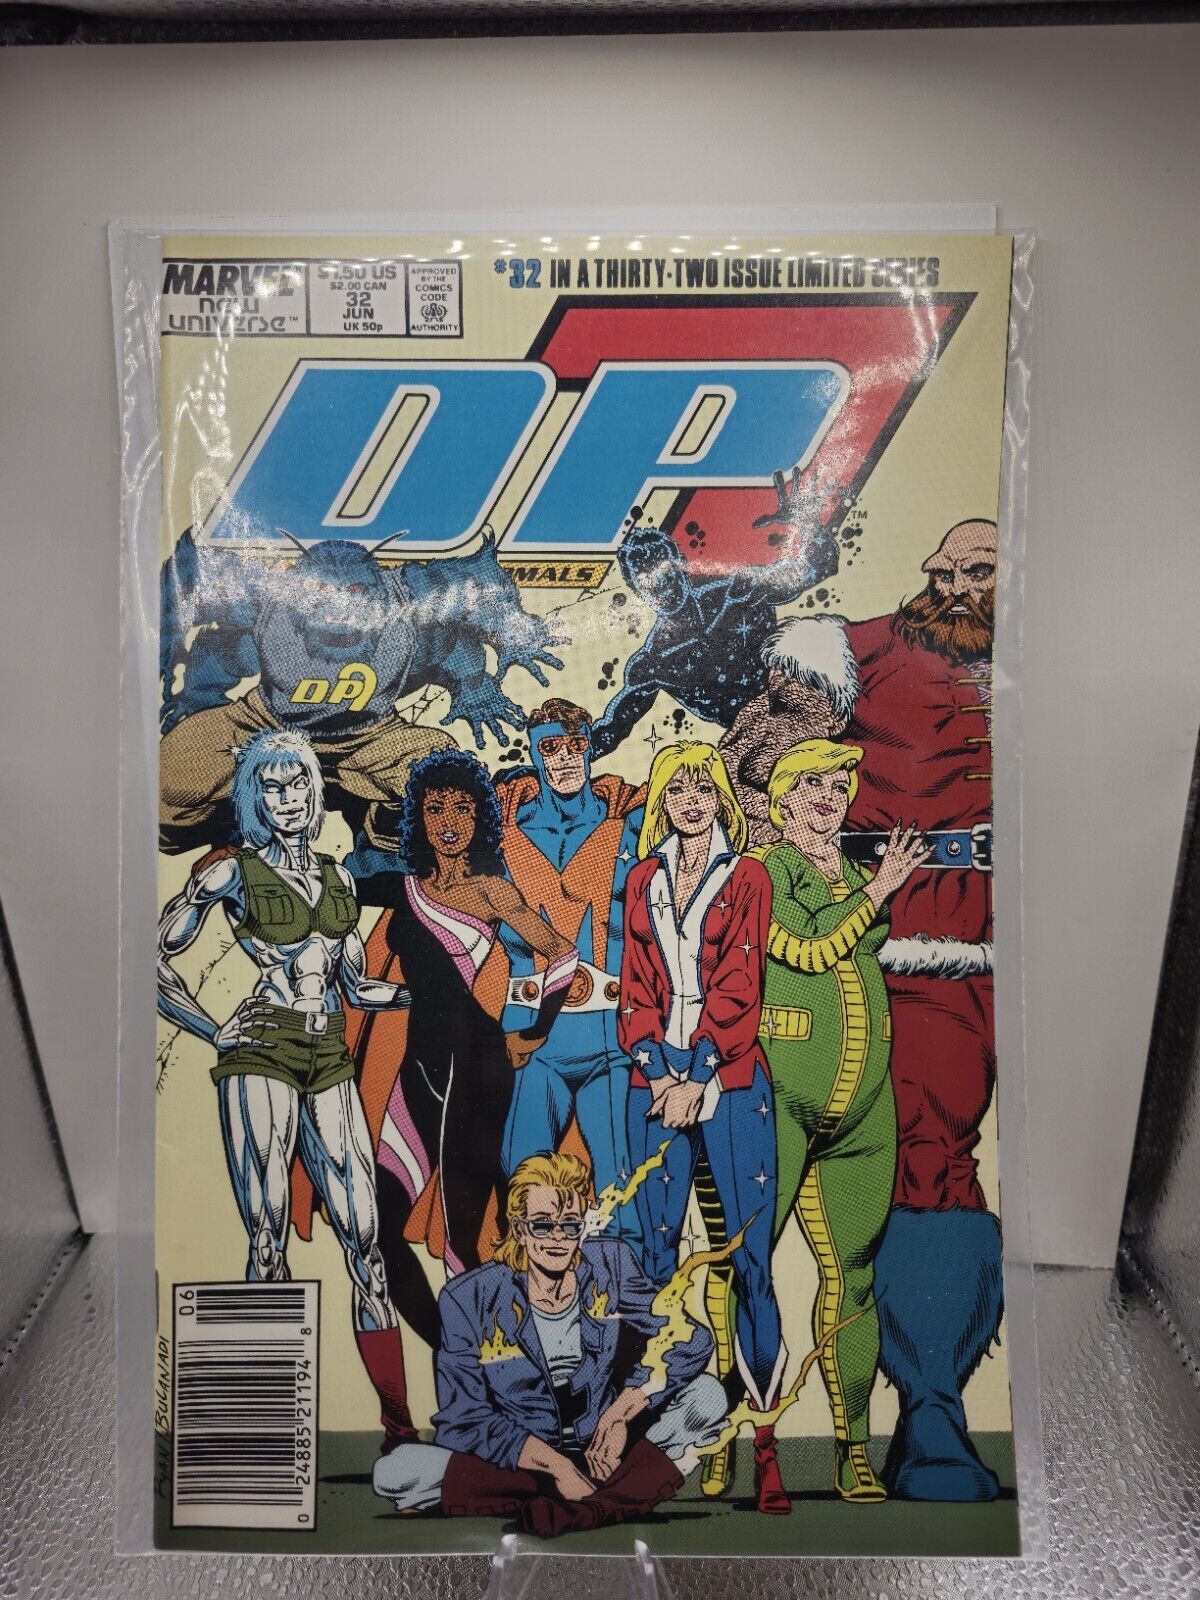 D.P.7 #32 (Marvel Comics June 1989)